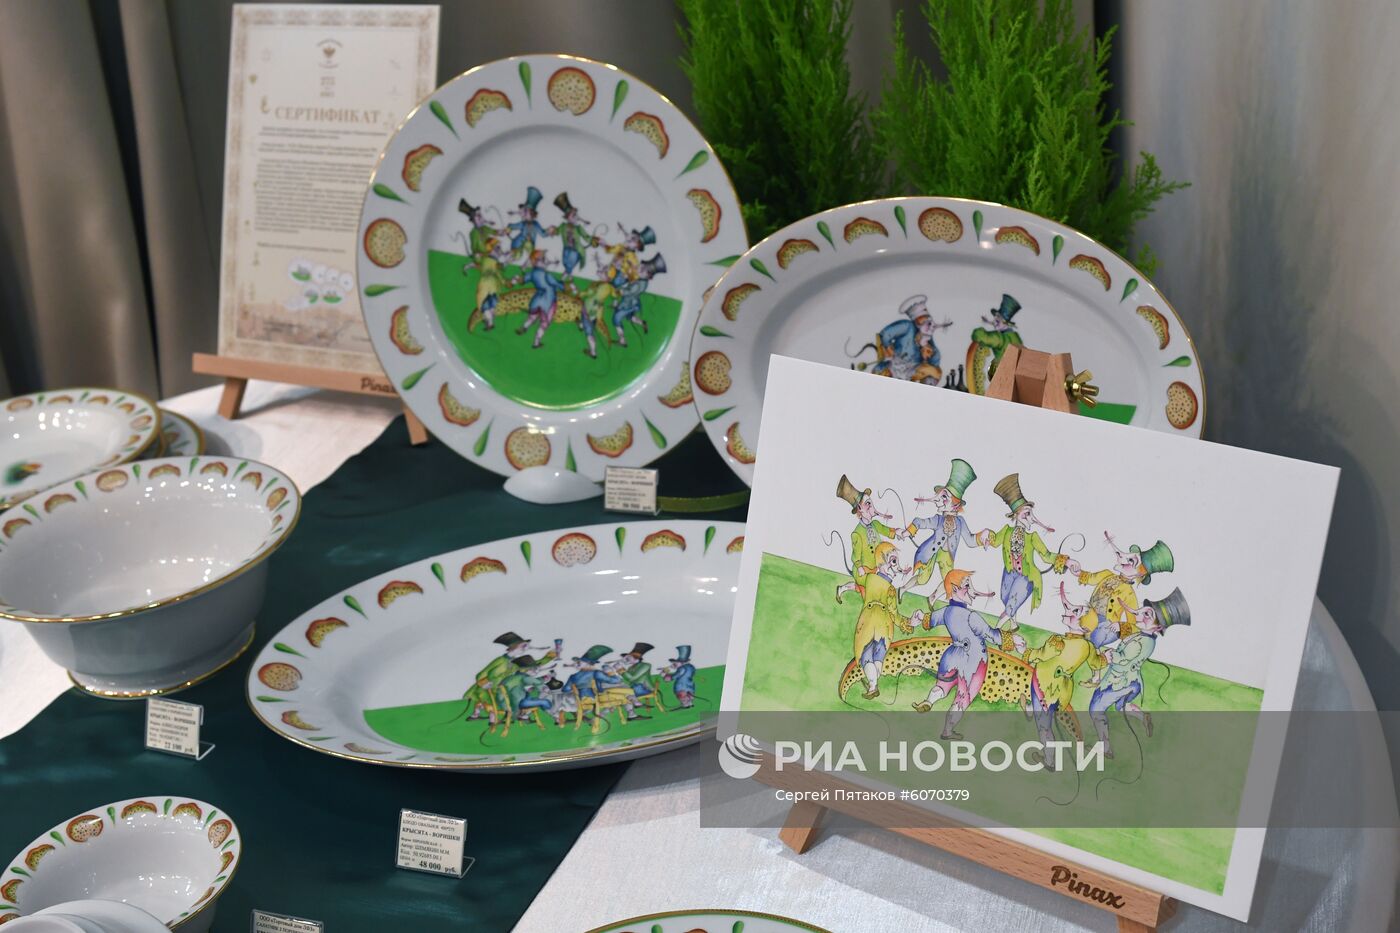 Показ новой коллекции фарфора М. Шемякина